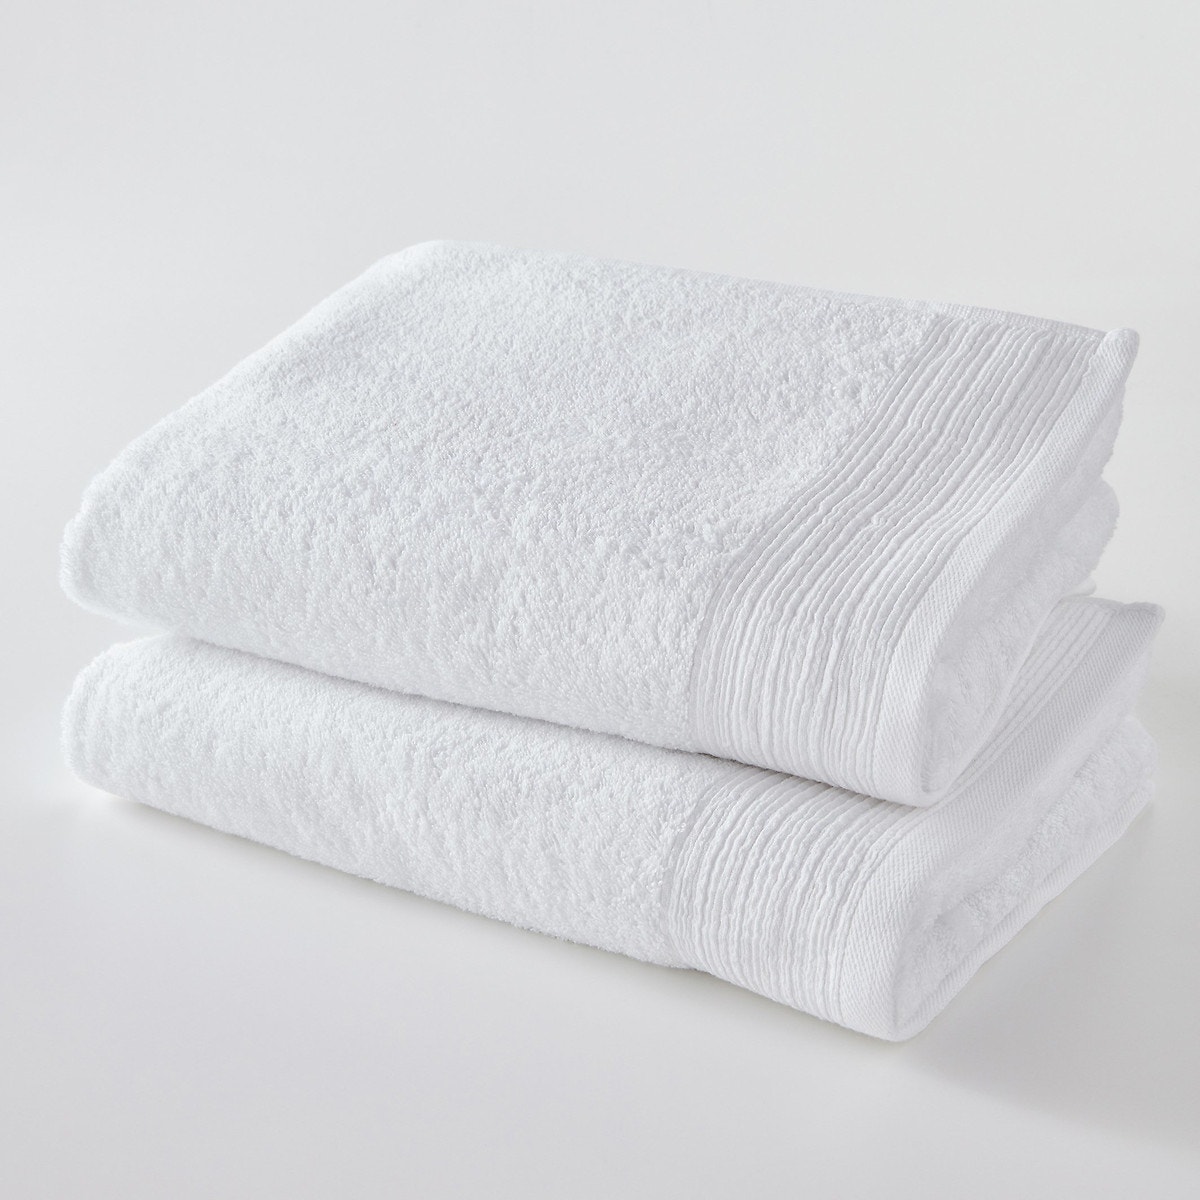 Σπίτι > Λευκά είδη > Μπάνιο > Πετσέτες προσώπου Πετσέτες από οργανικό βαμβάκι (σετ των 2) 50x100 cm